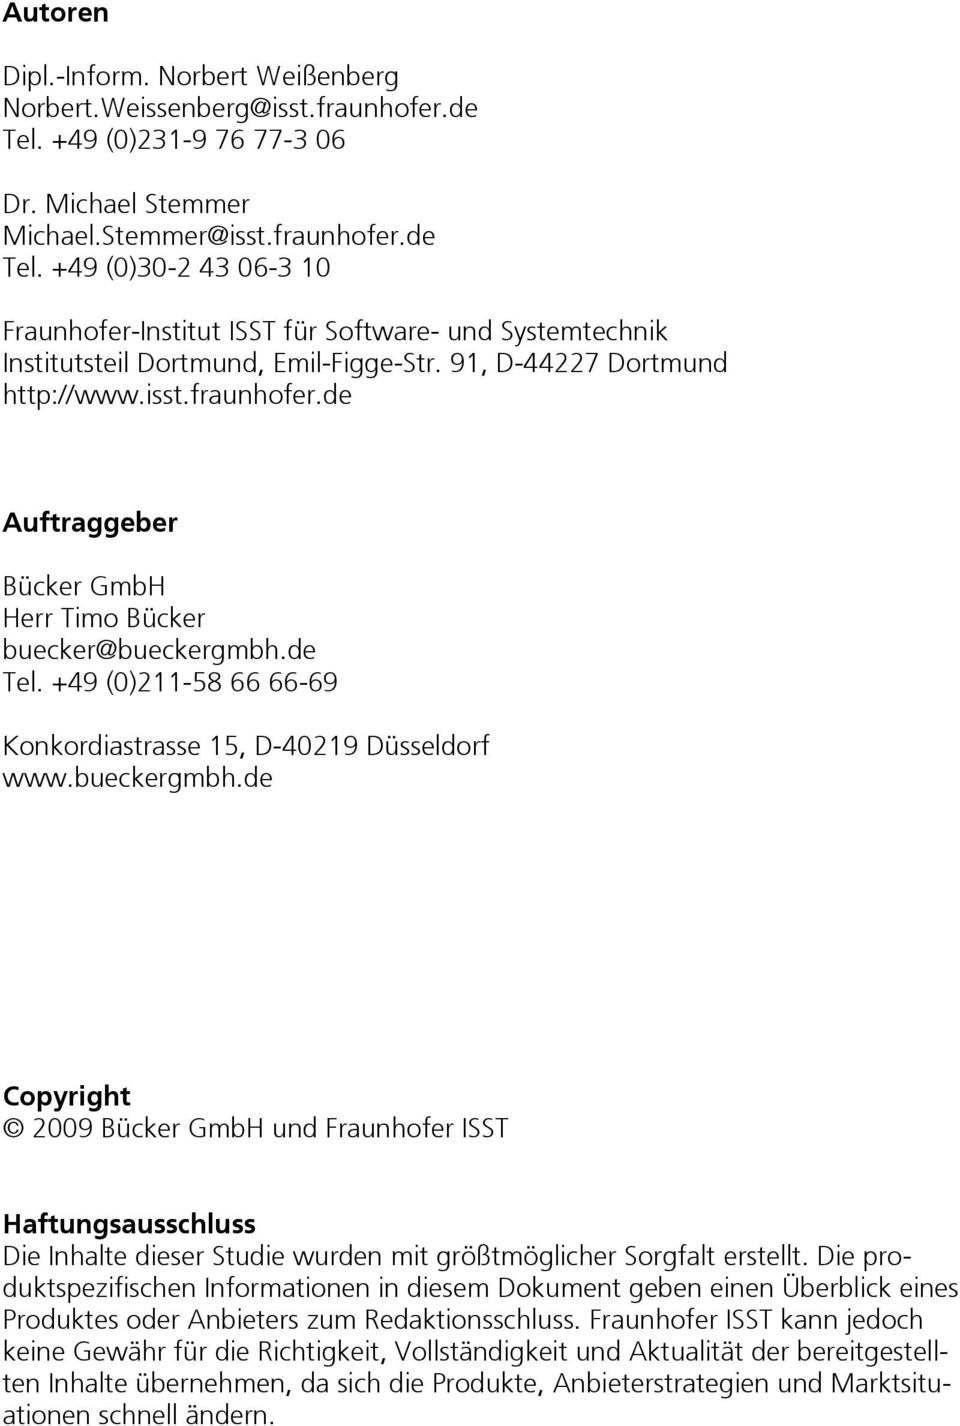 +49 (0)30-2 43 06-3 10 Fraunhofer-Institut ISST für Software- und Systemtechnik Institutsteil Dortmund, Emil-Figge-Str. 91, D-44227 Dortmund http://www.isst.fraunhofer.